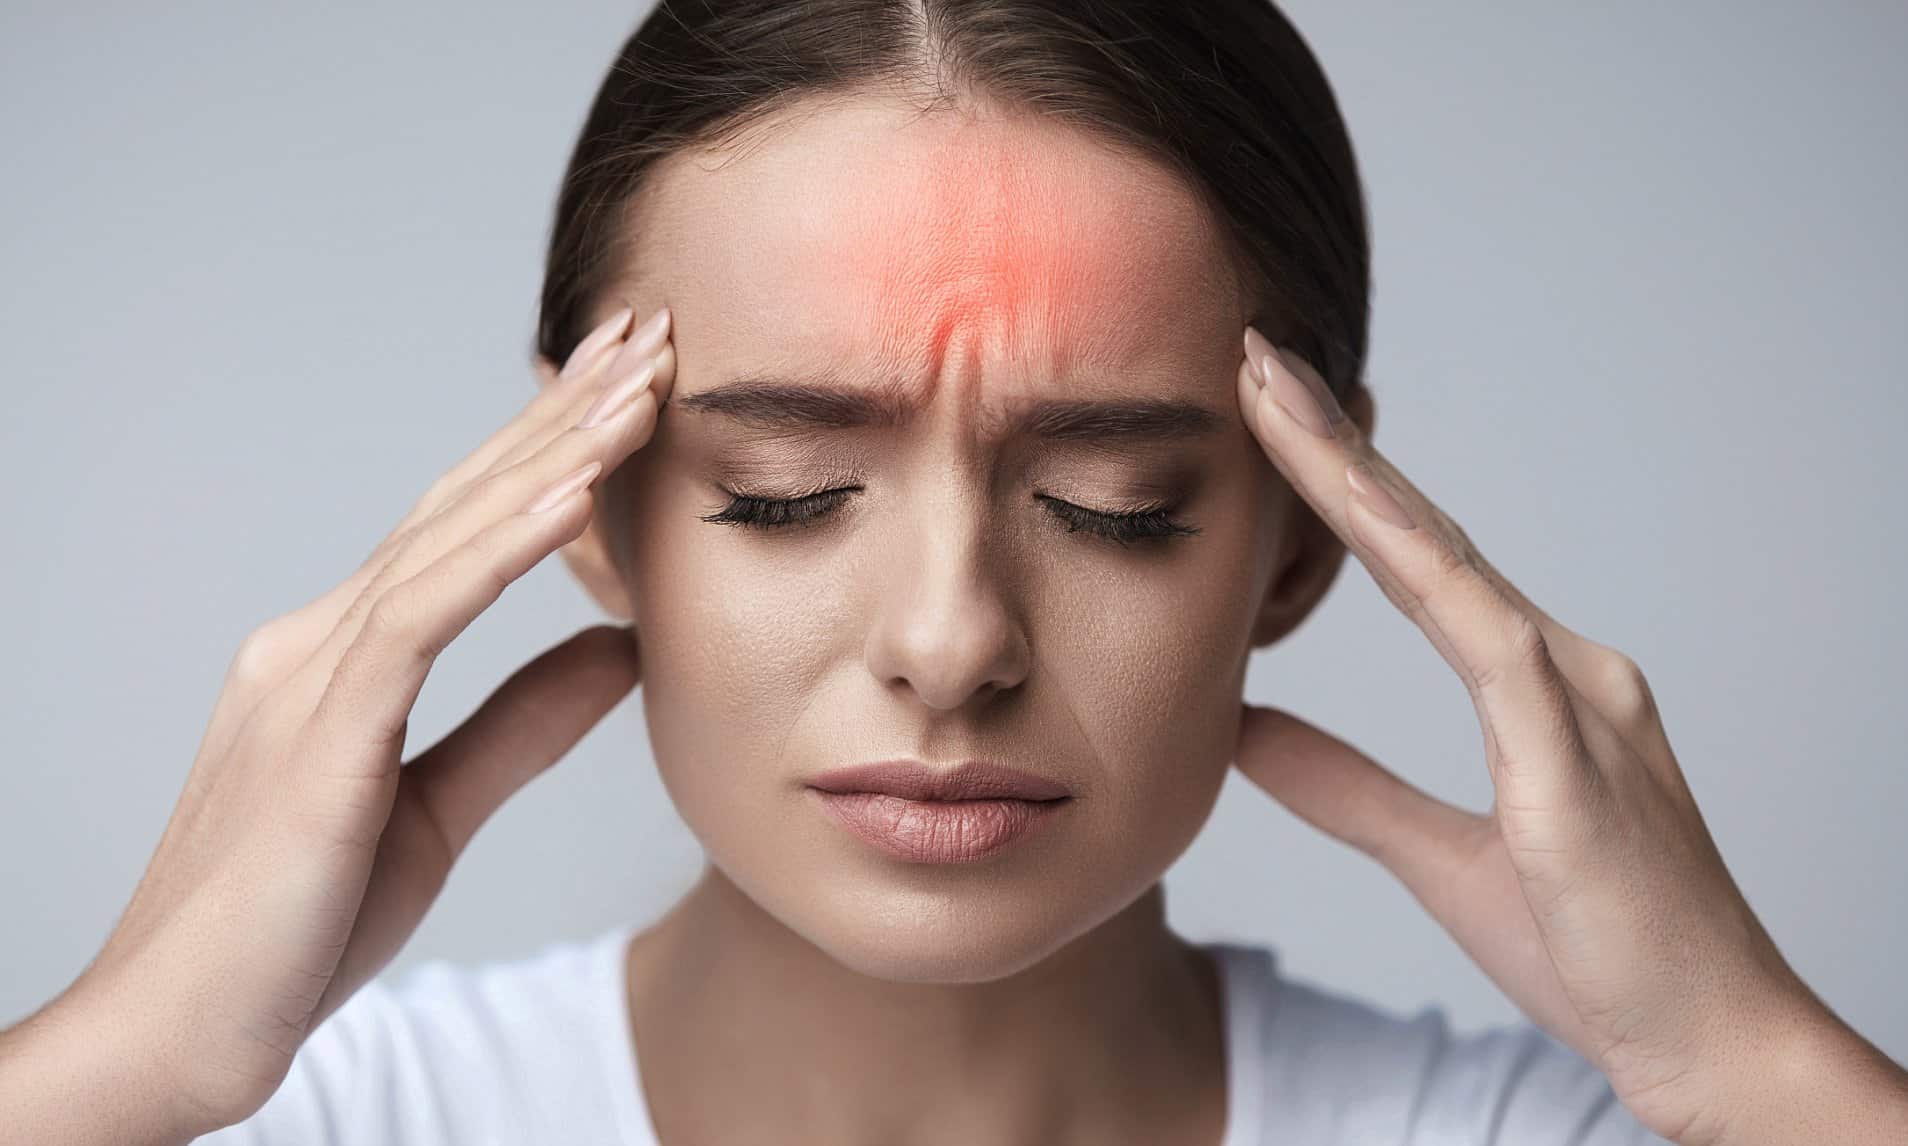 types of migraine